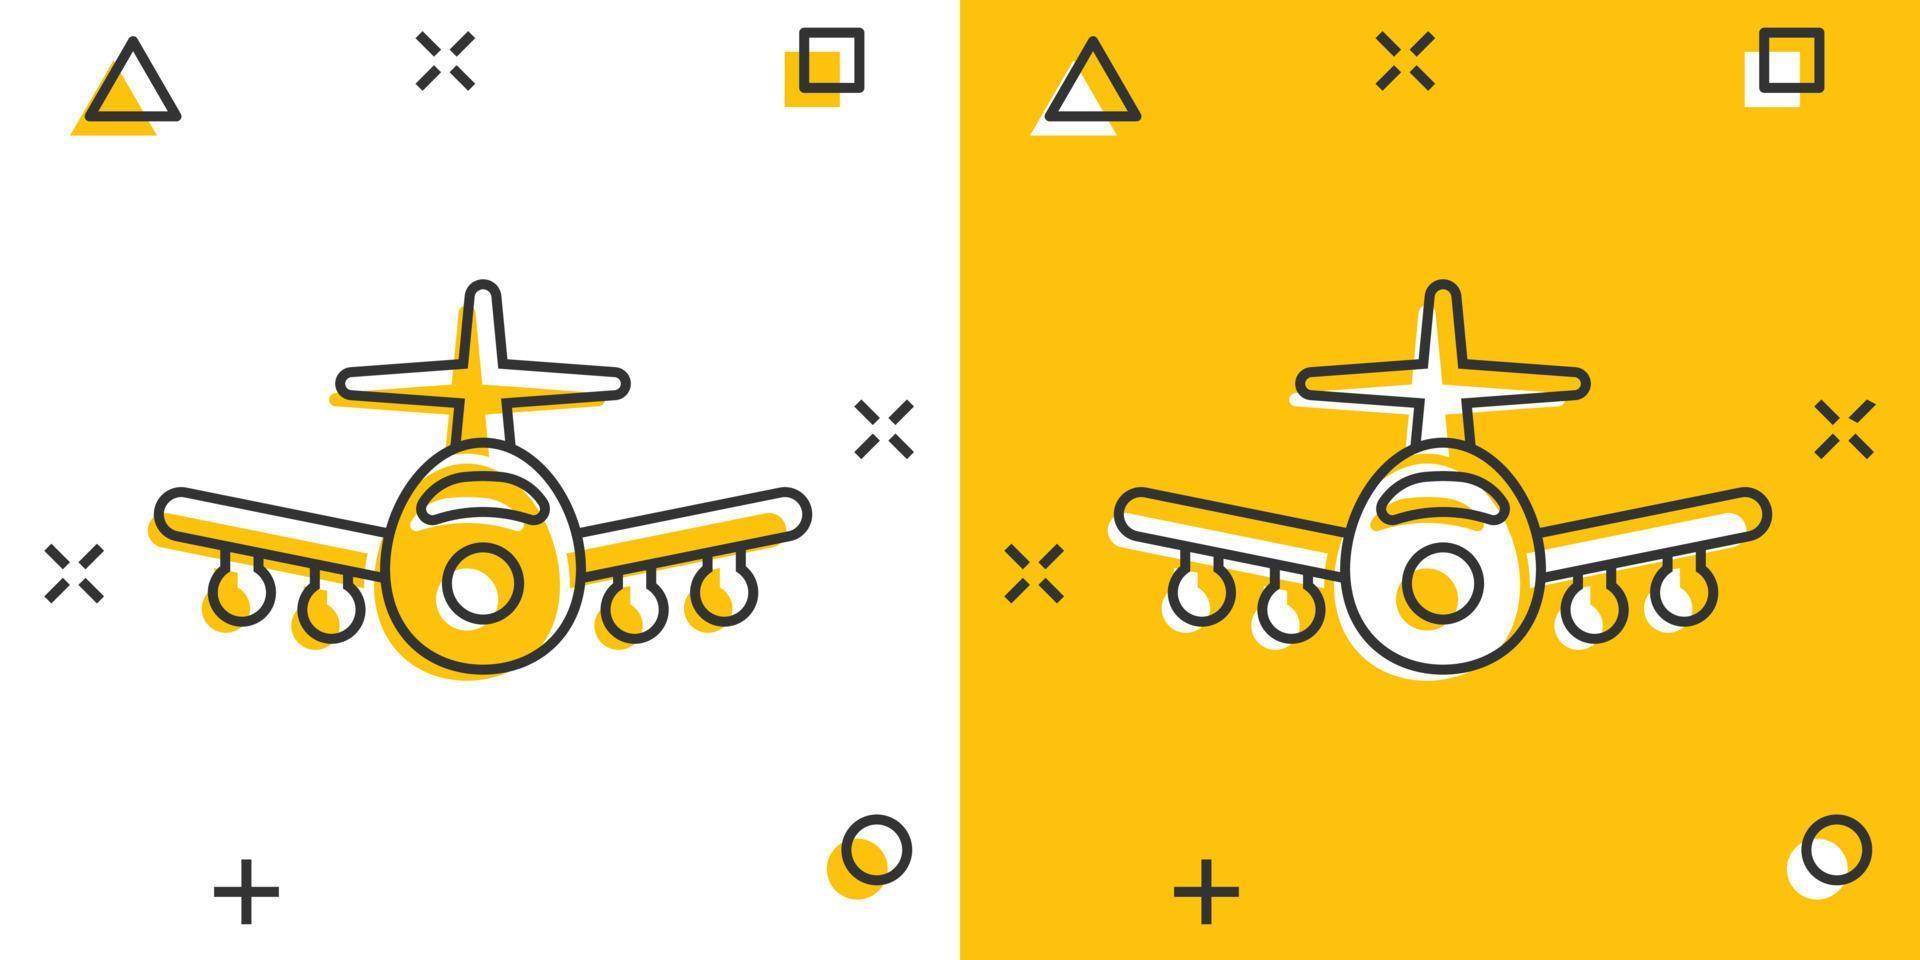 plan ikon i komisk stil. flygplan tecknad serie vektor illustration på vit isolerat bakgrund. flyg trafikflygplan stänk effekt företag begrepp.